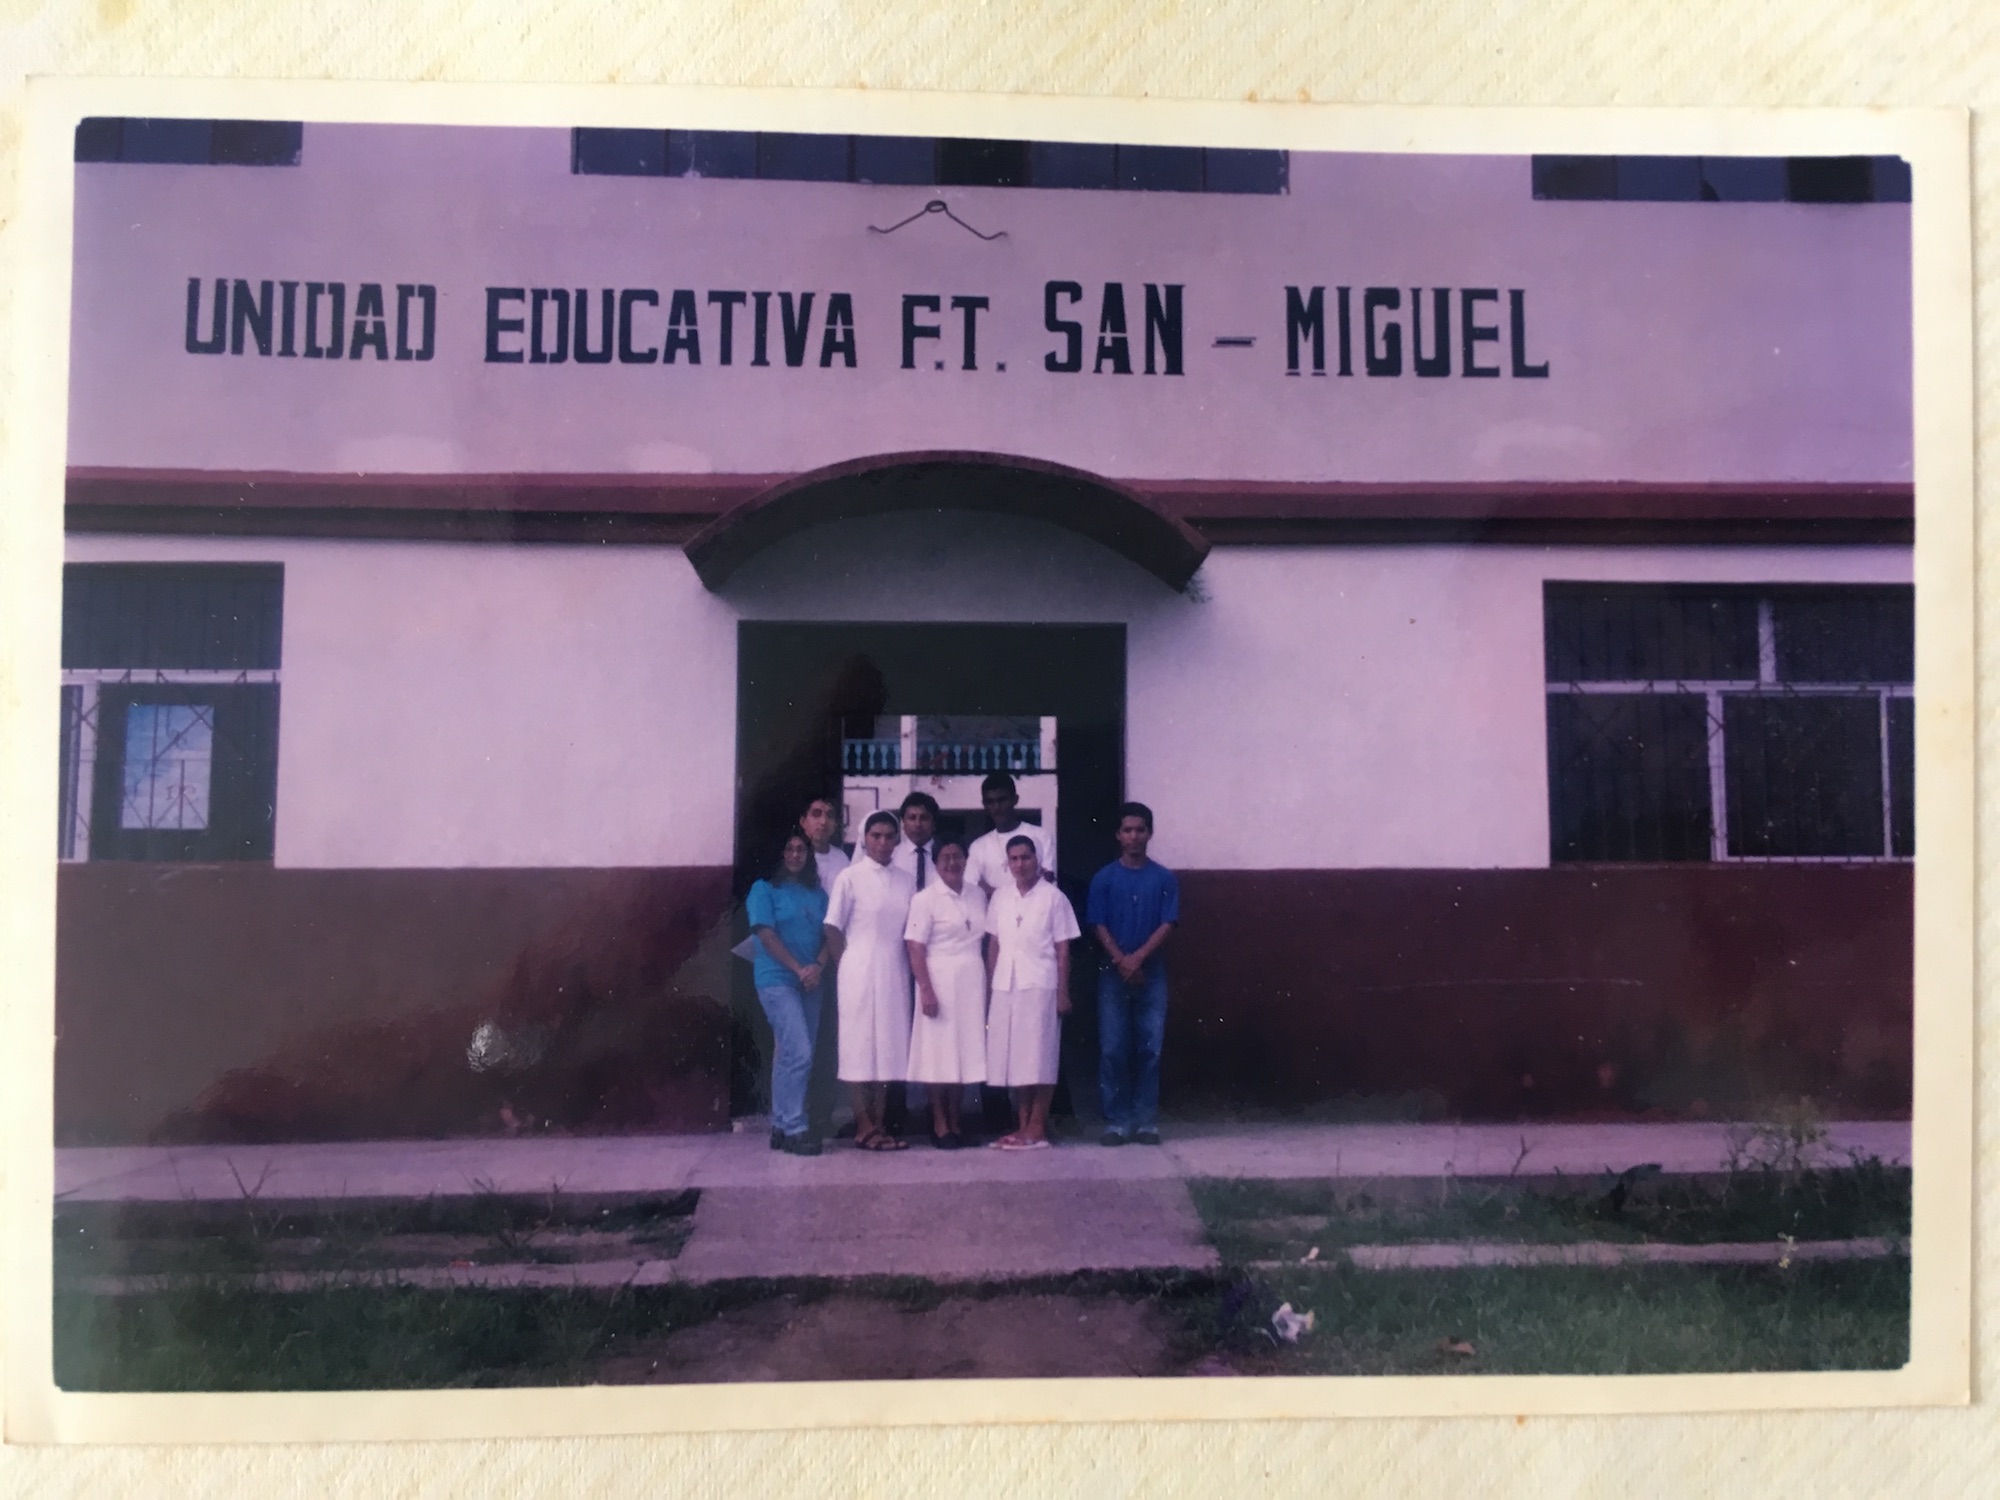 Former Colegio San Miguel